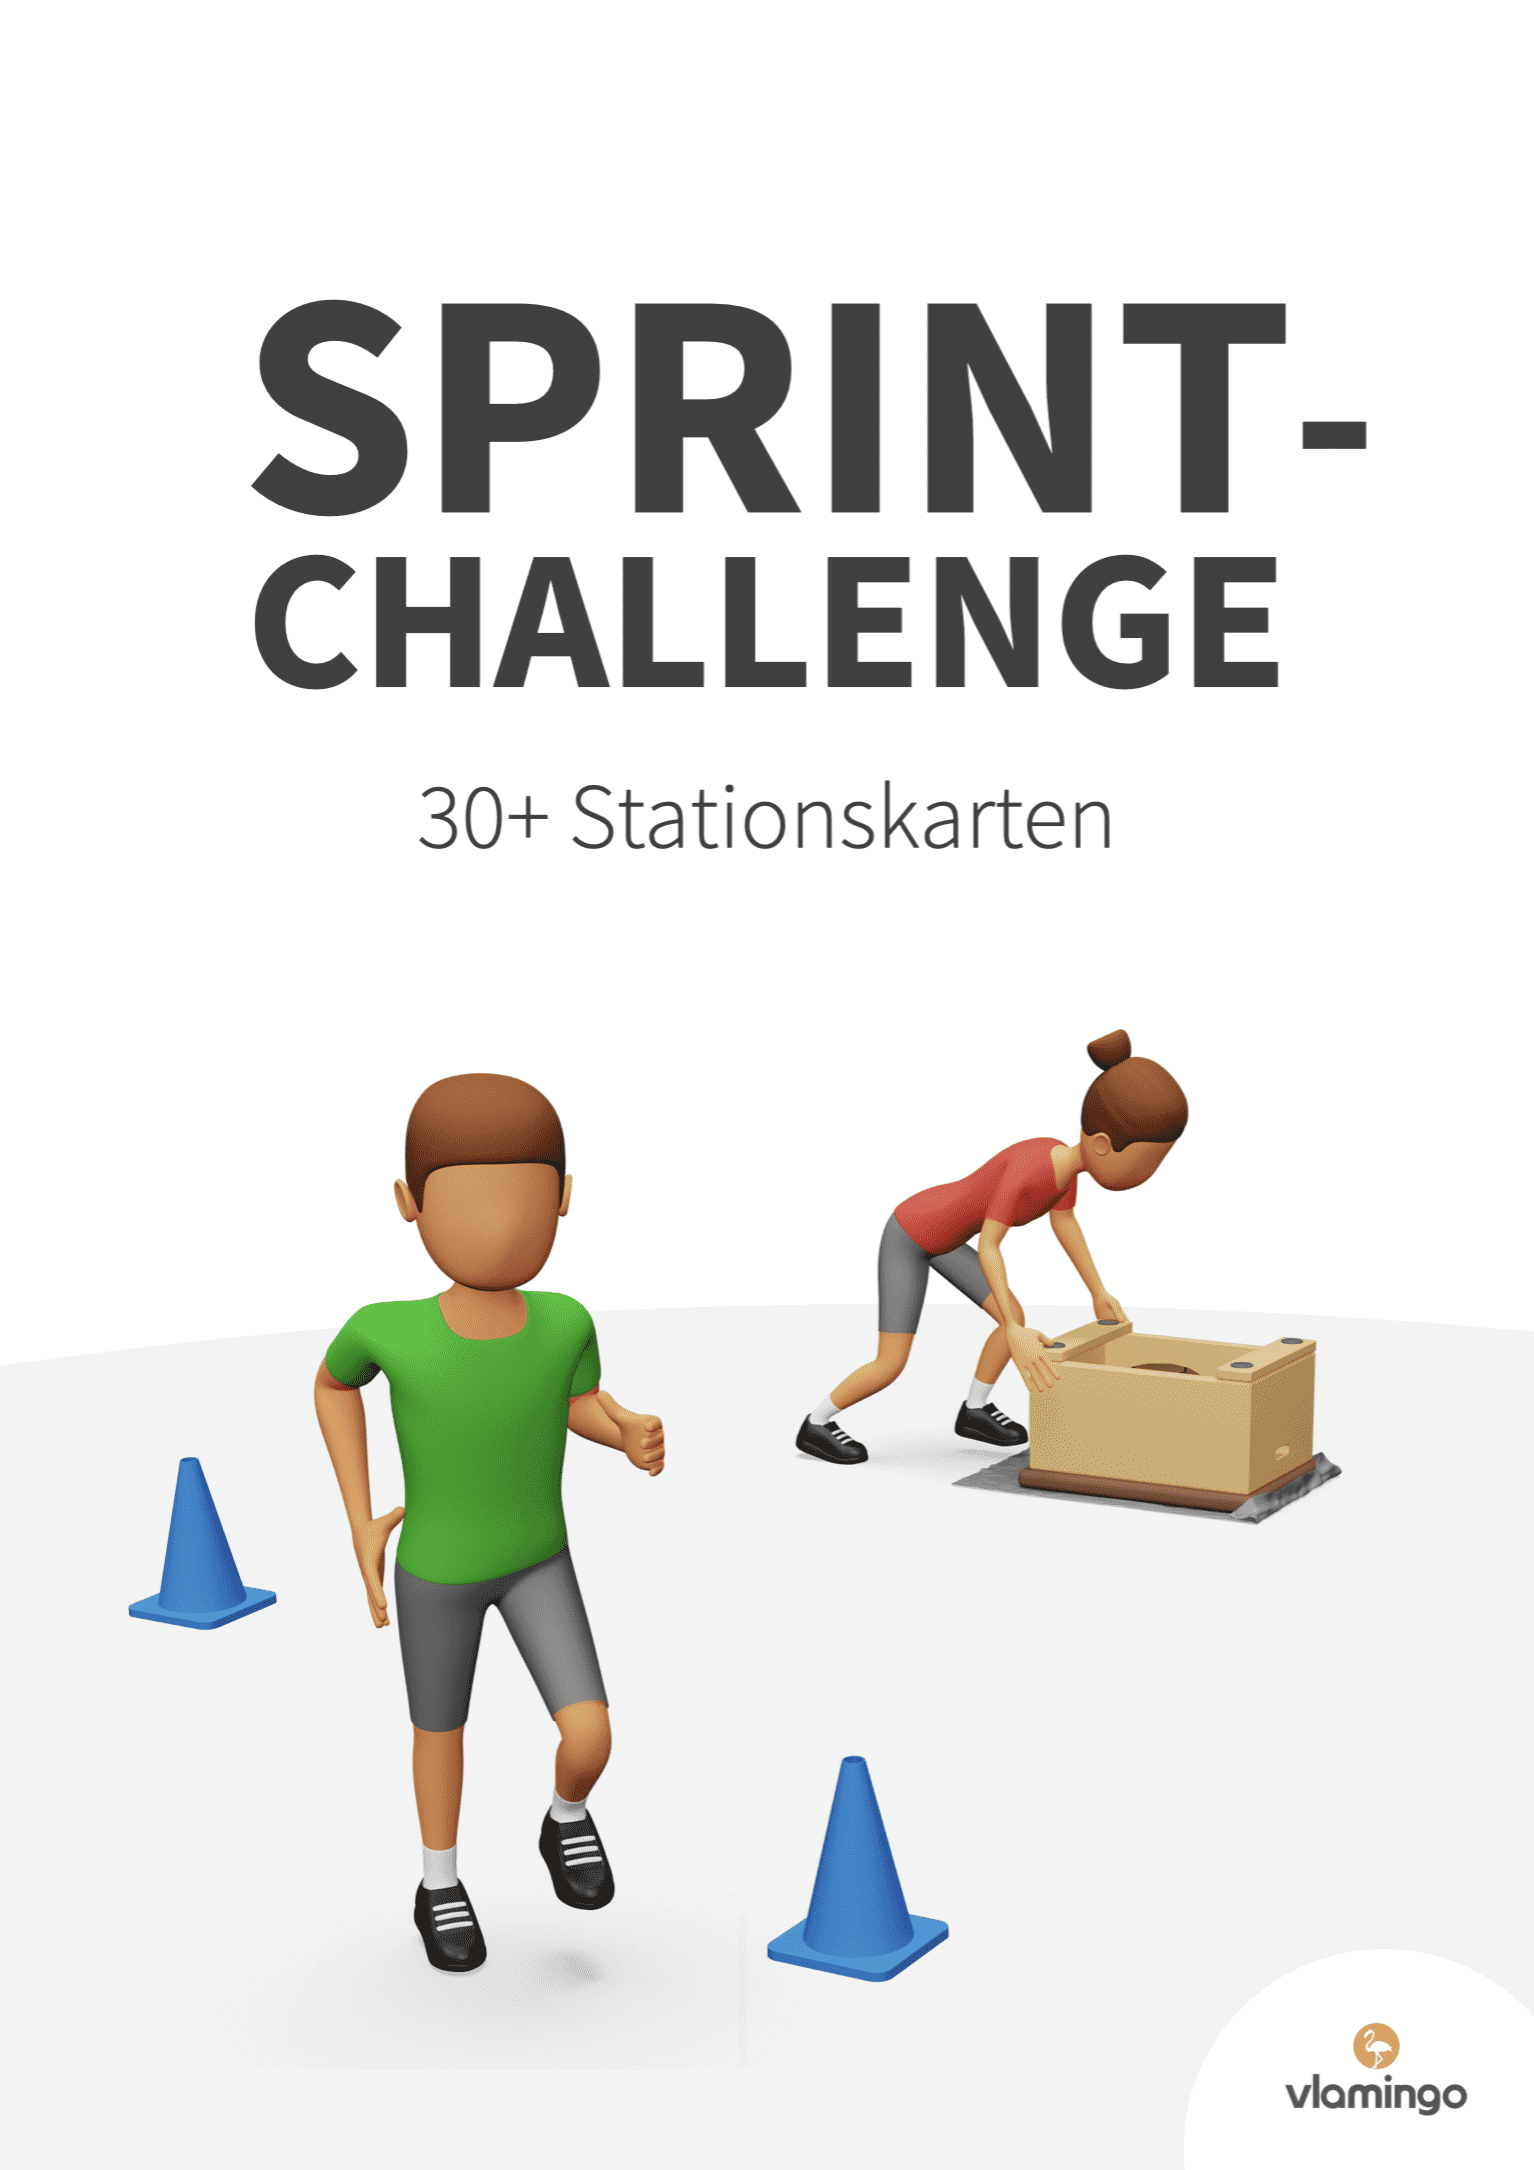 Sprint-Challenge im Sportunterricht